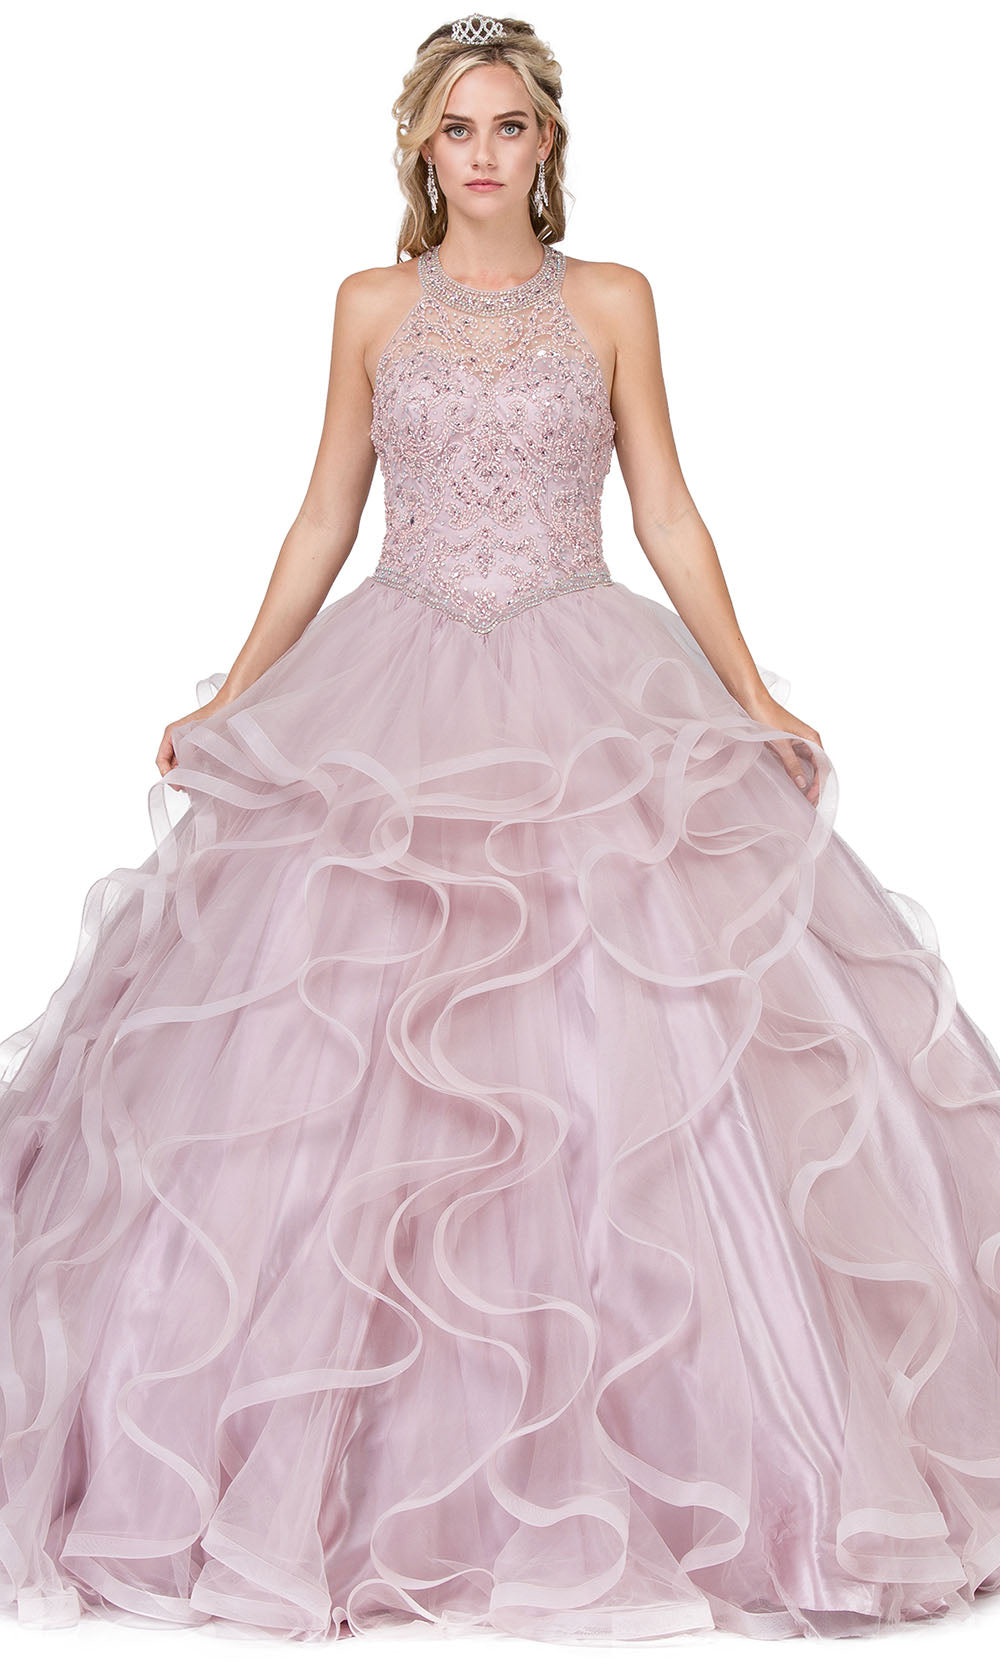 Dancing Queen - 1285 Jewel Beaded Halter Ruffled Gown In Pink